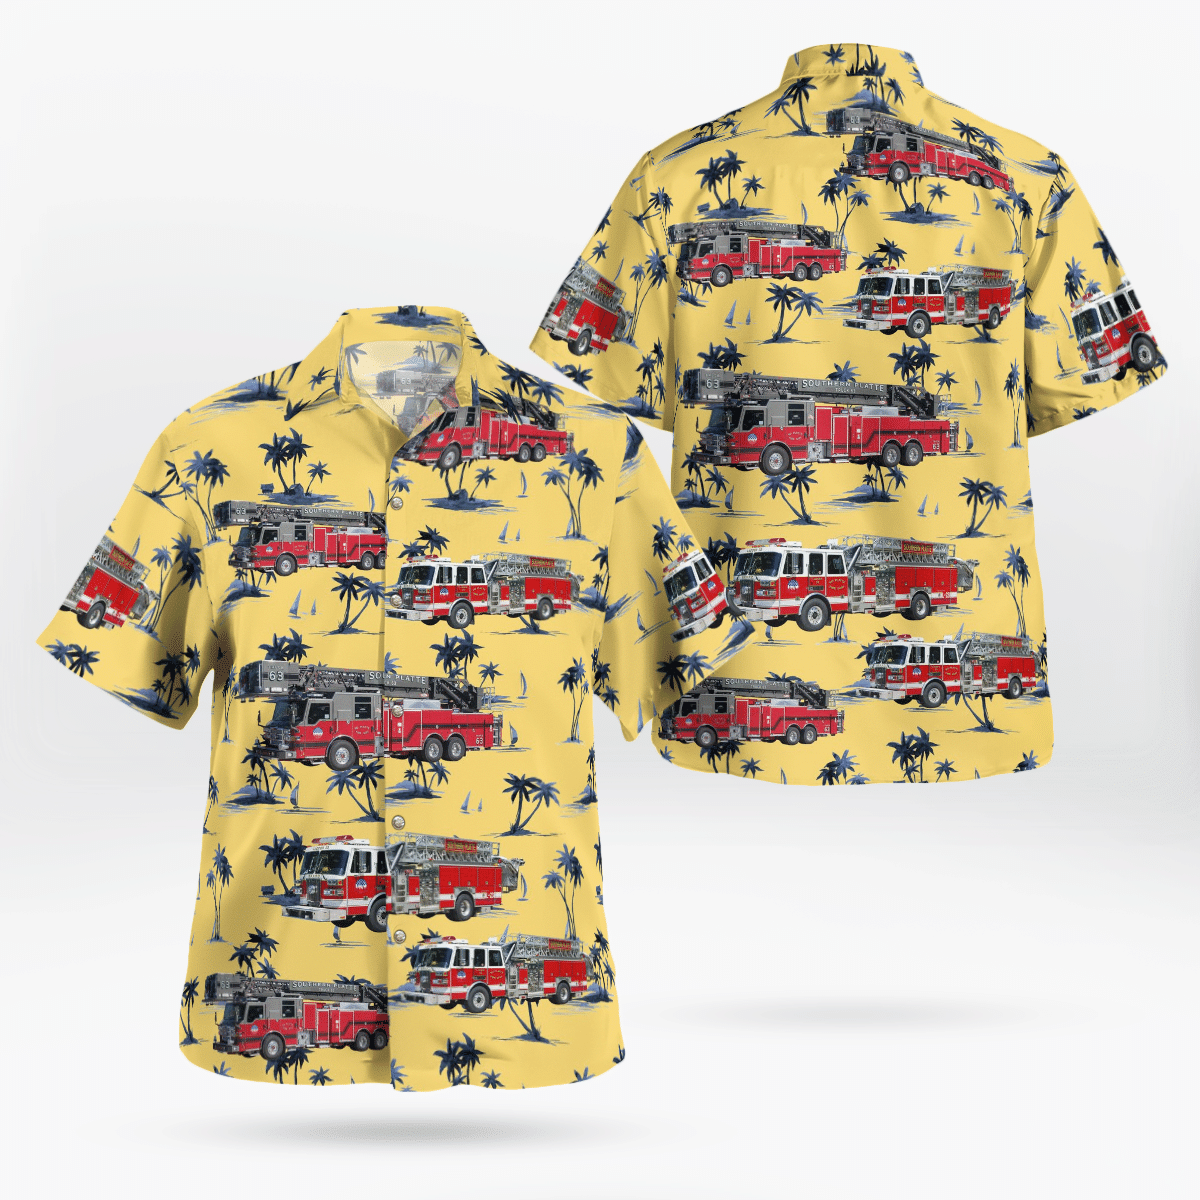 You won't regret buying these Aloha Shirt 73